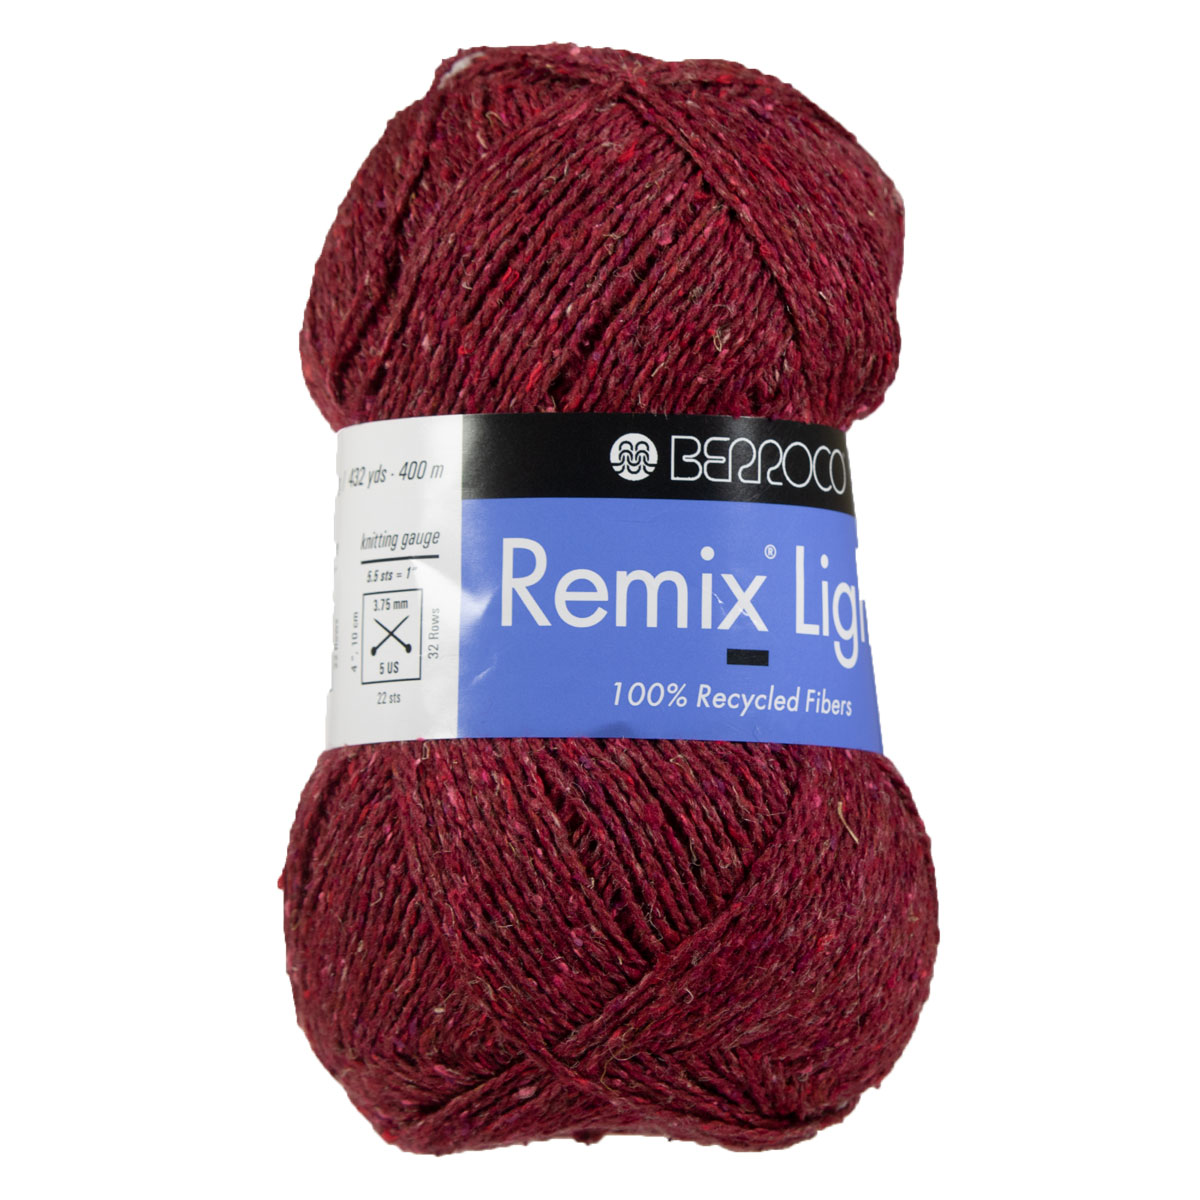 Berroco Remix Light Yarn - 6960 Strawberry at Jimmy Beans Wool